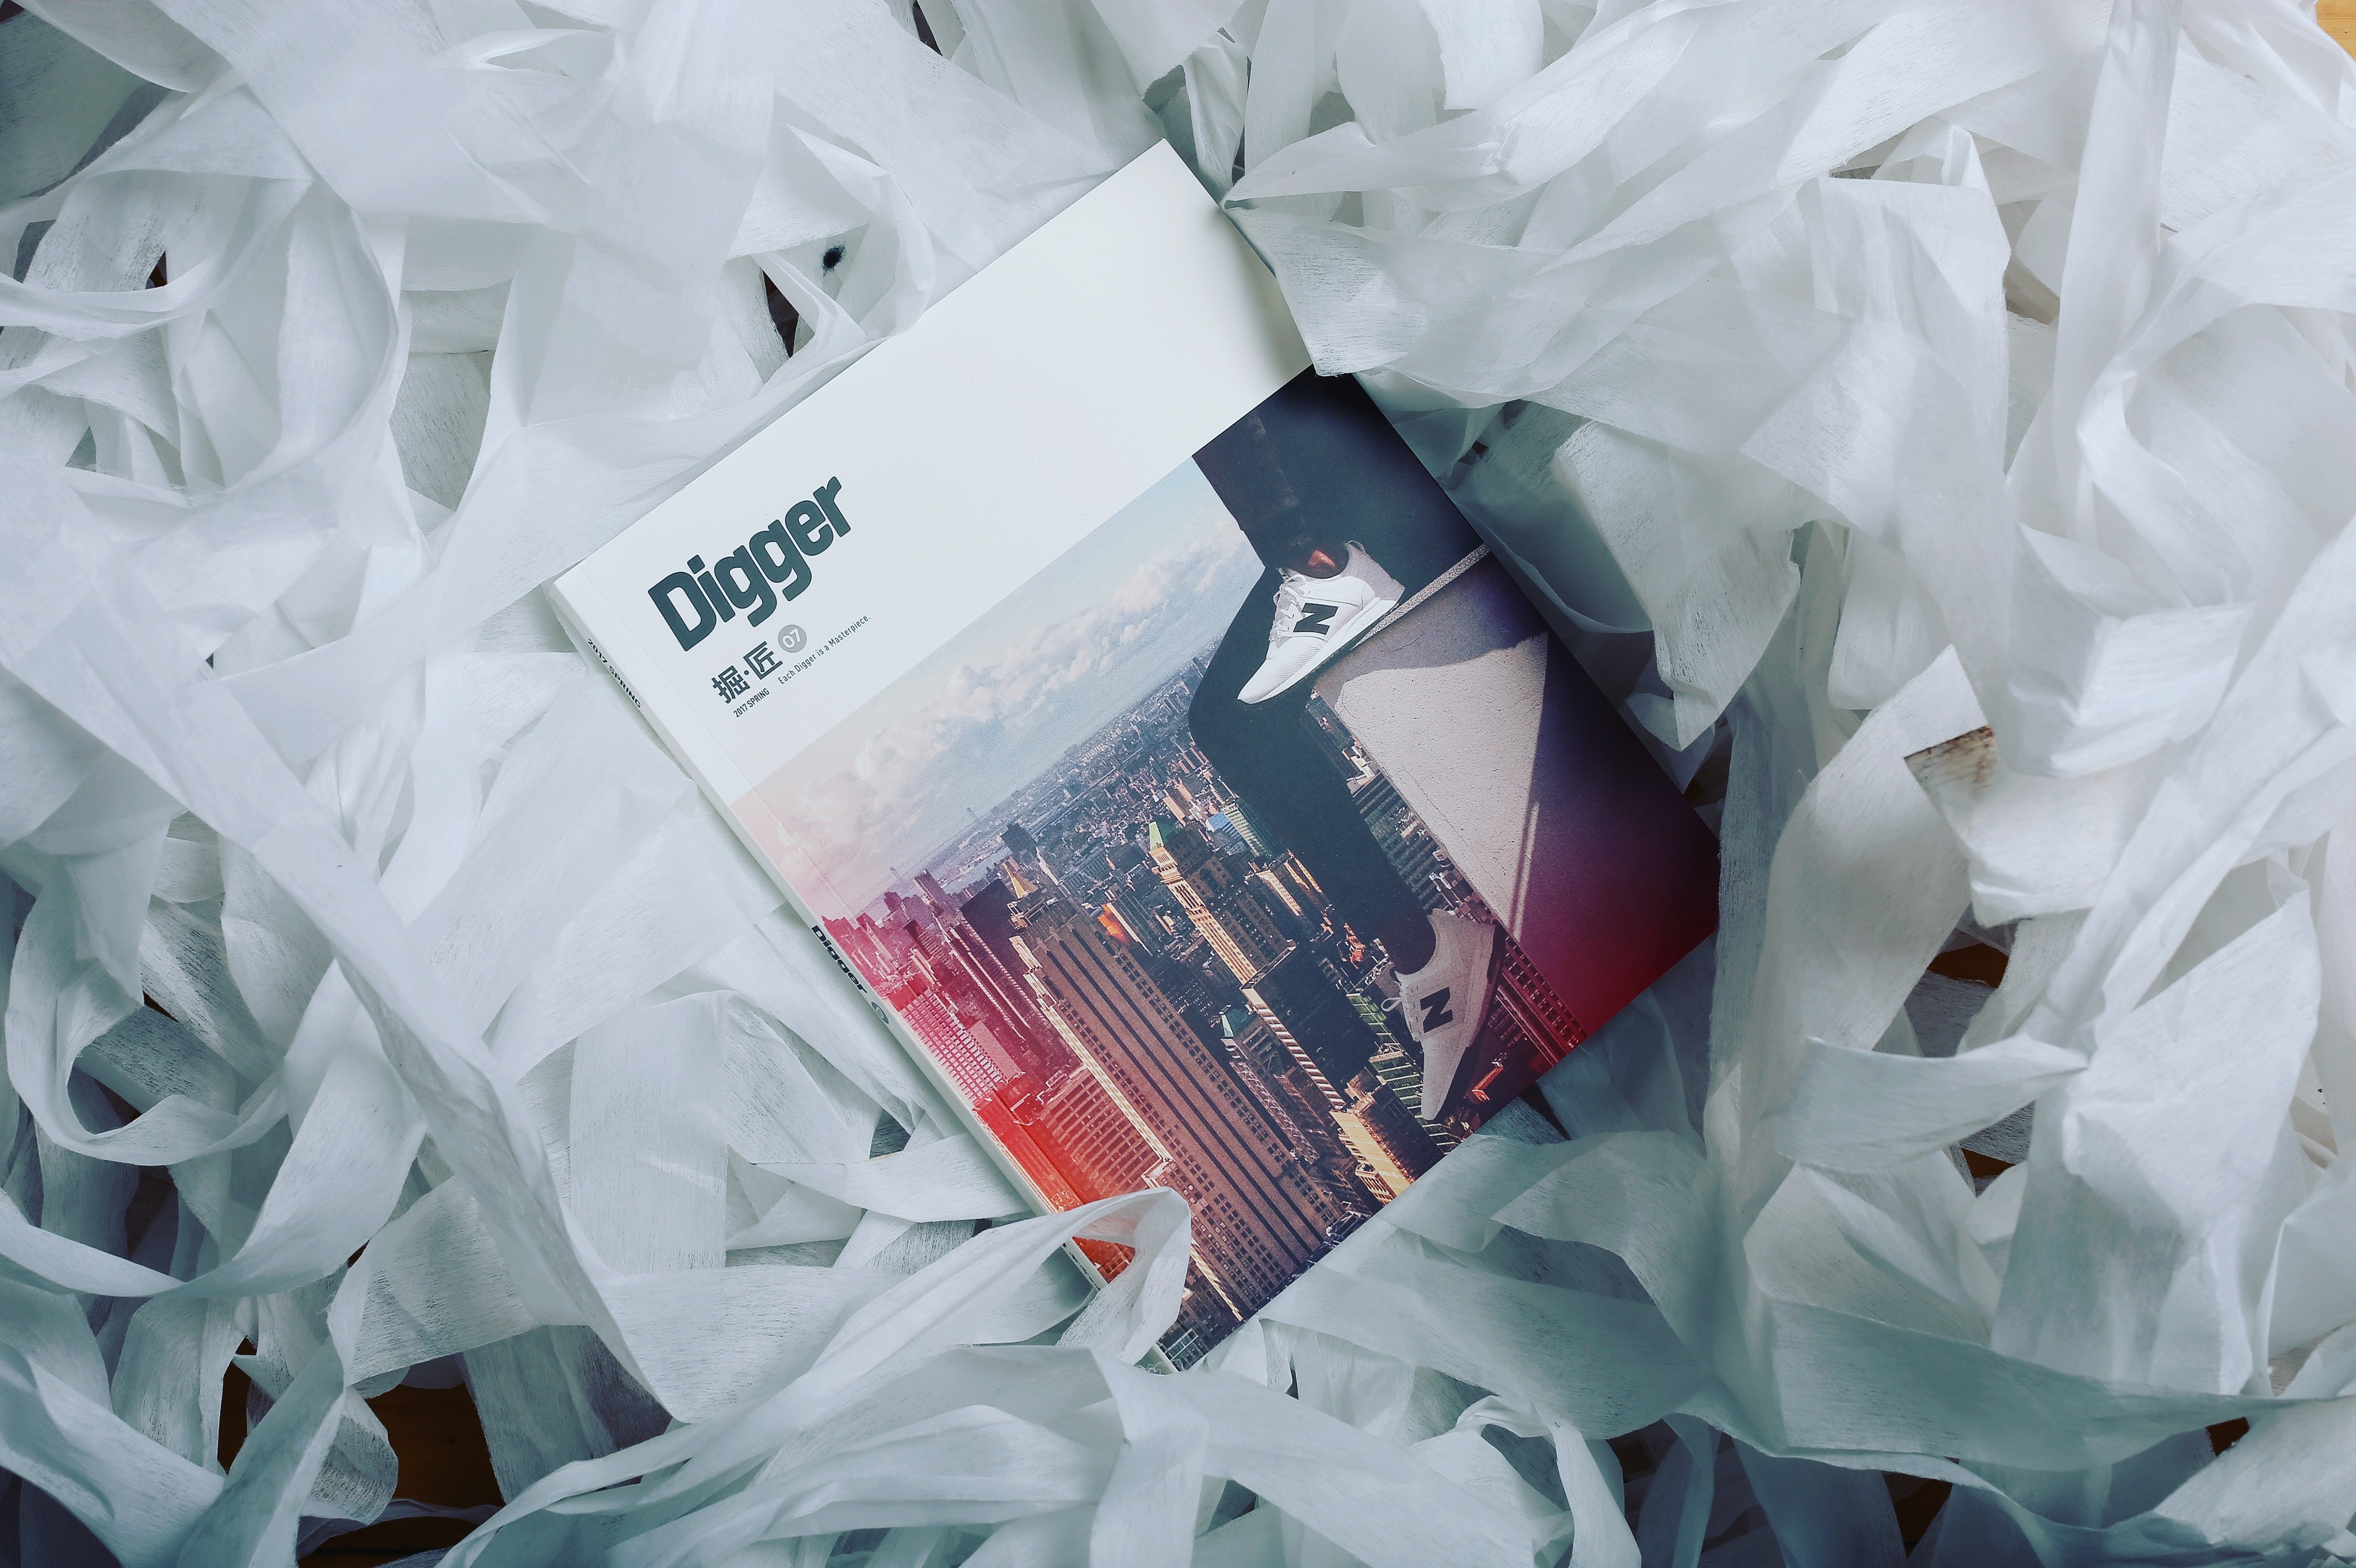 《Digger·Spring 2017》球鞋雜誌正式上架